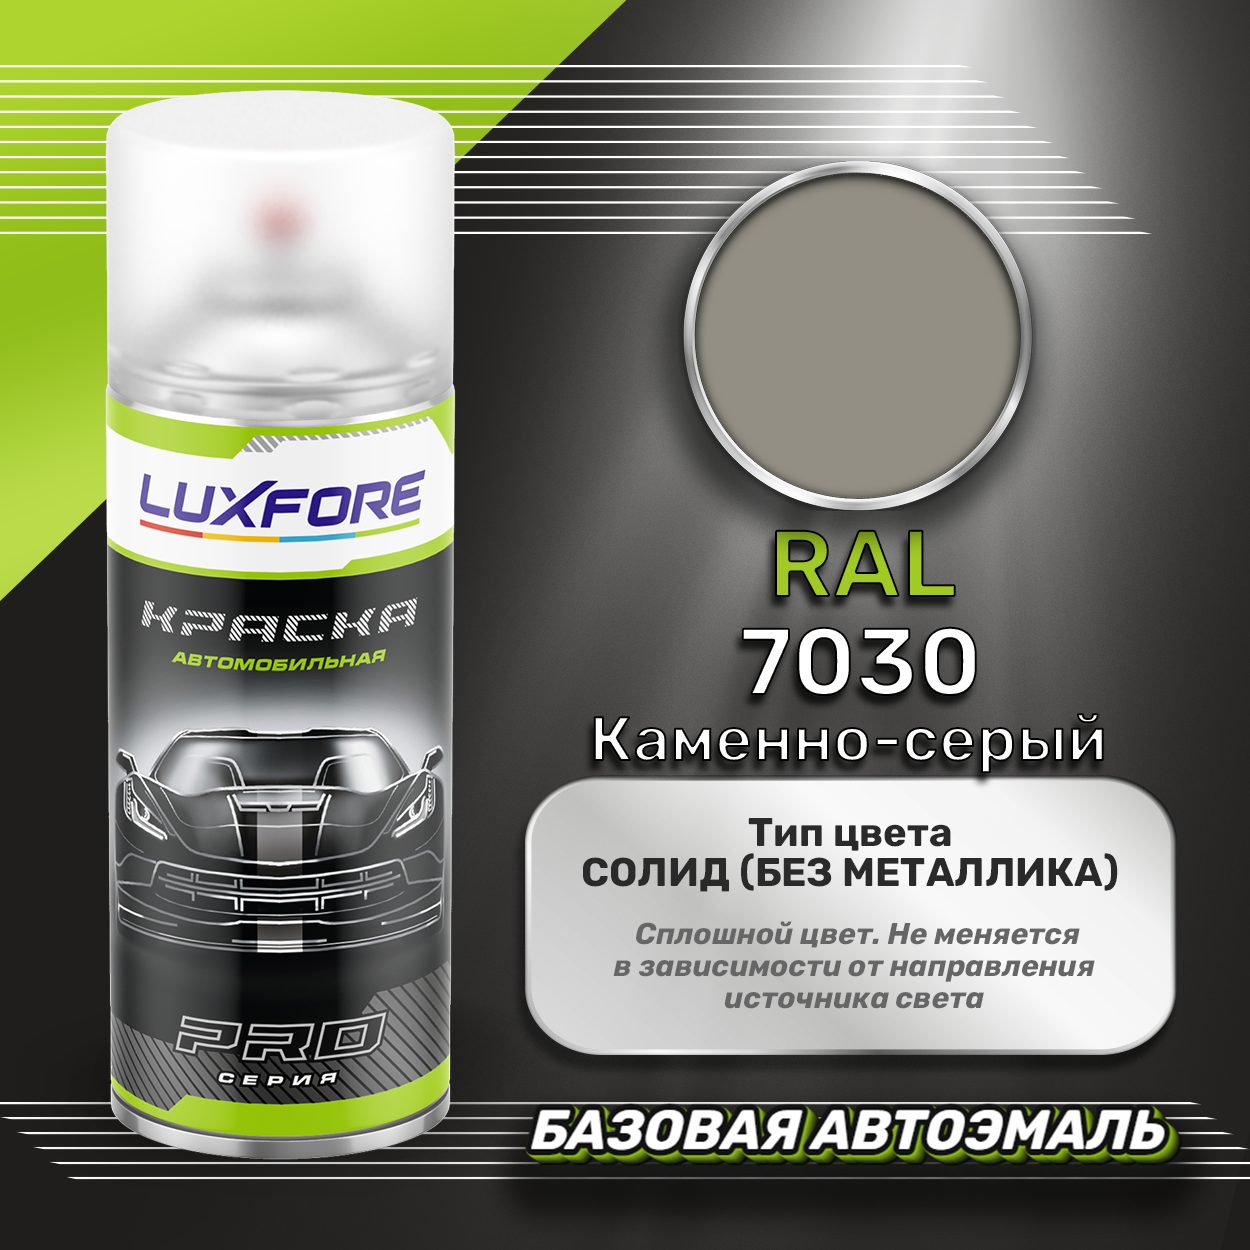 Luxfore аэрозольная краска RAL 7030 Каменно-серый 400 мл